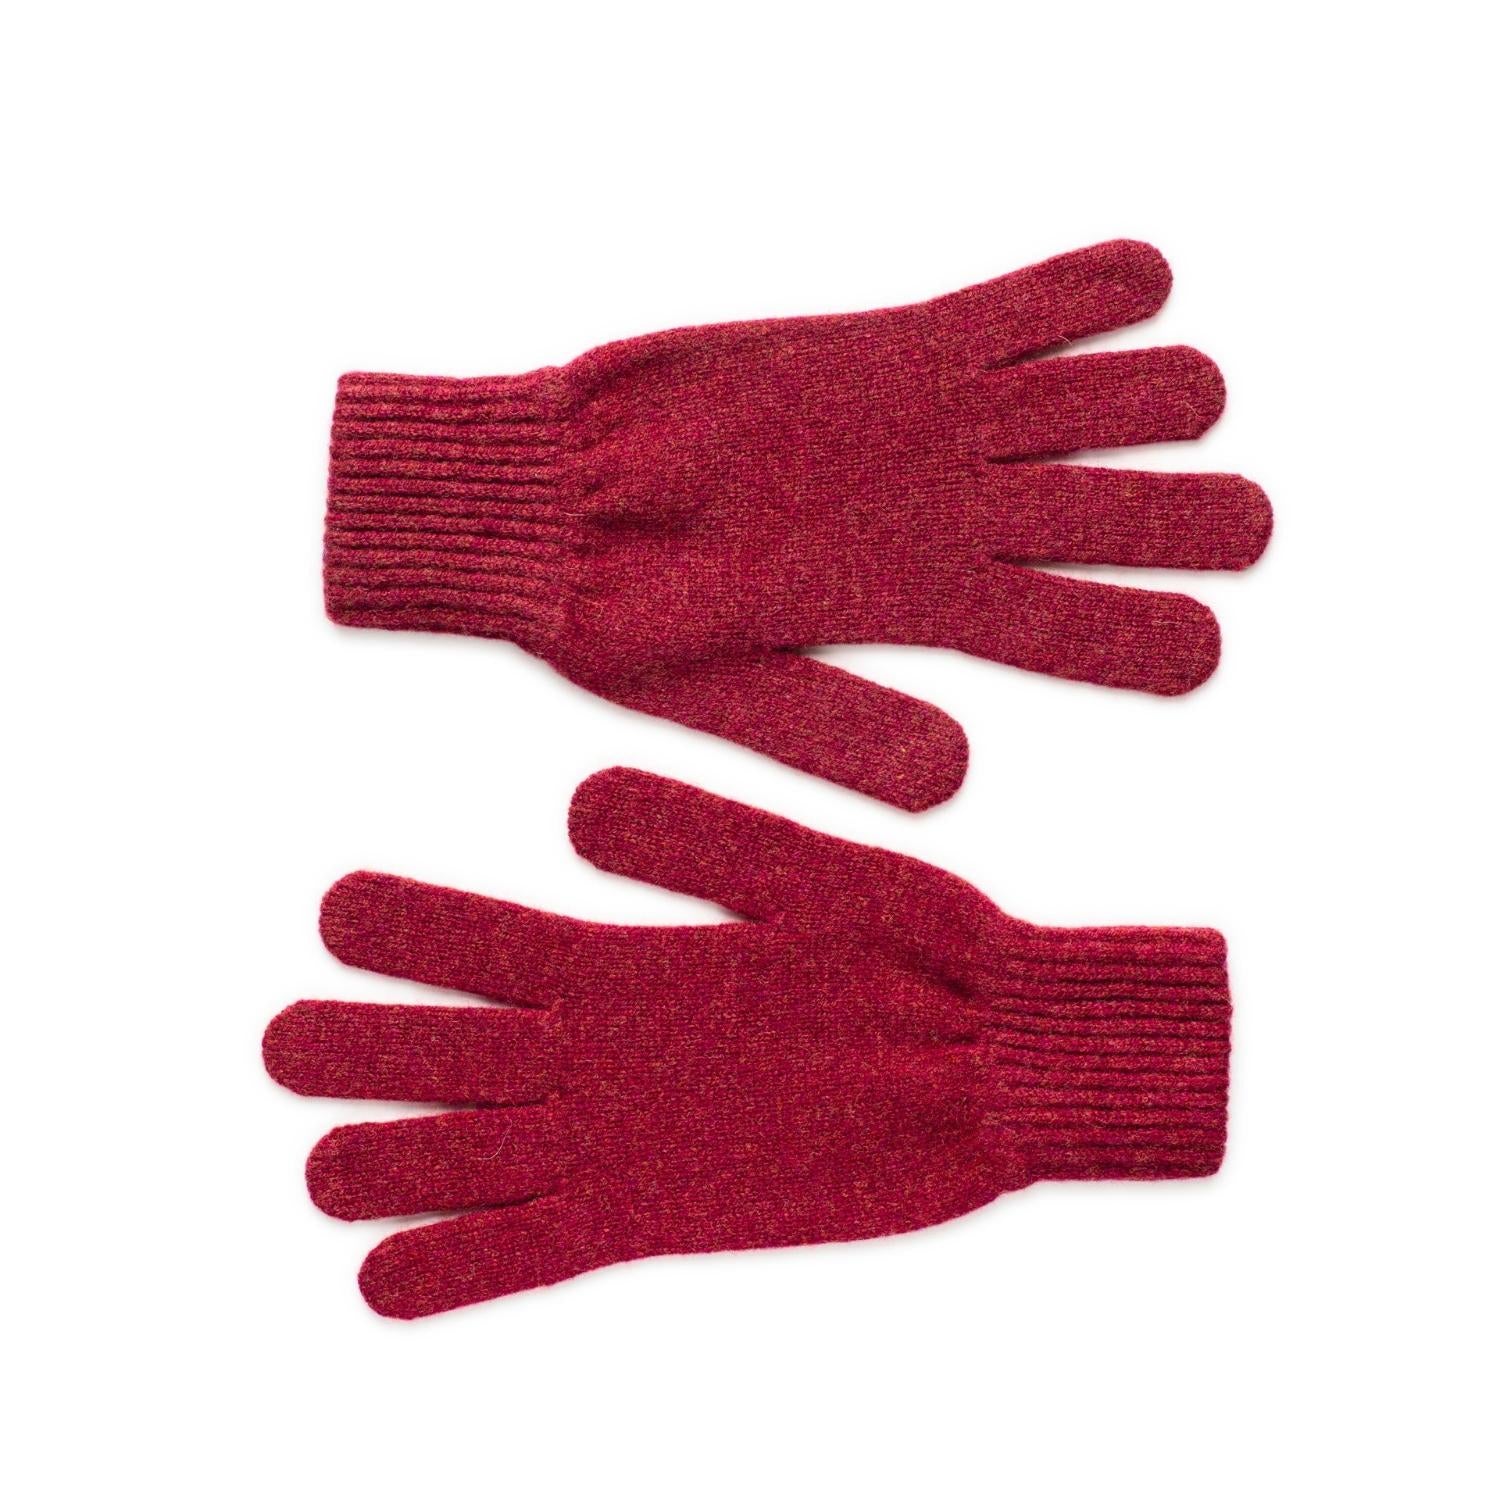 Ladies Lambswool Gloves in Rhubarb Red